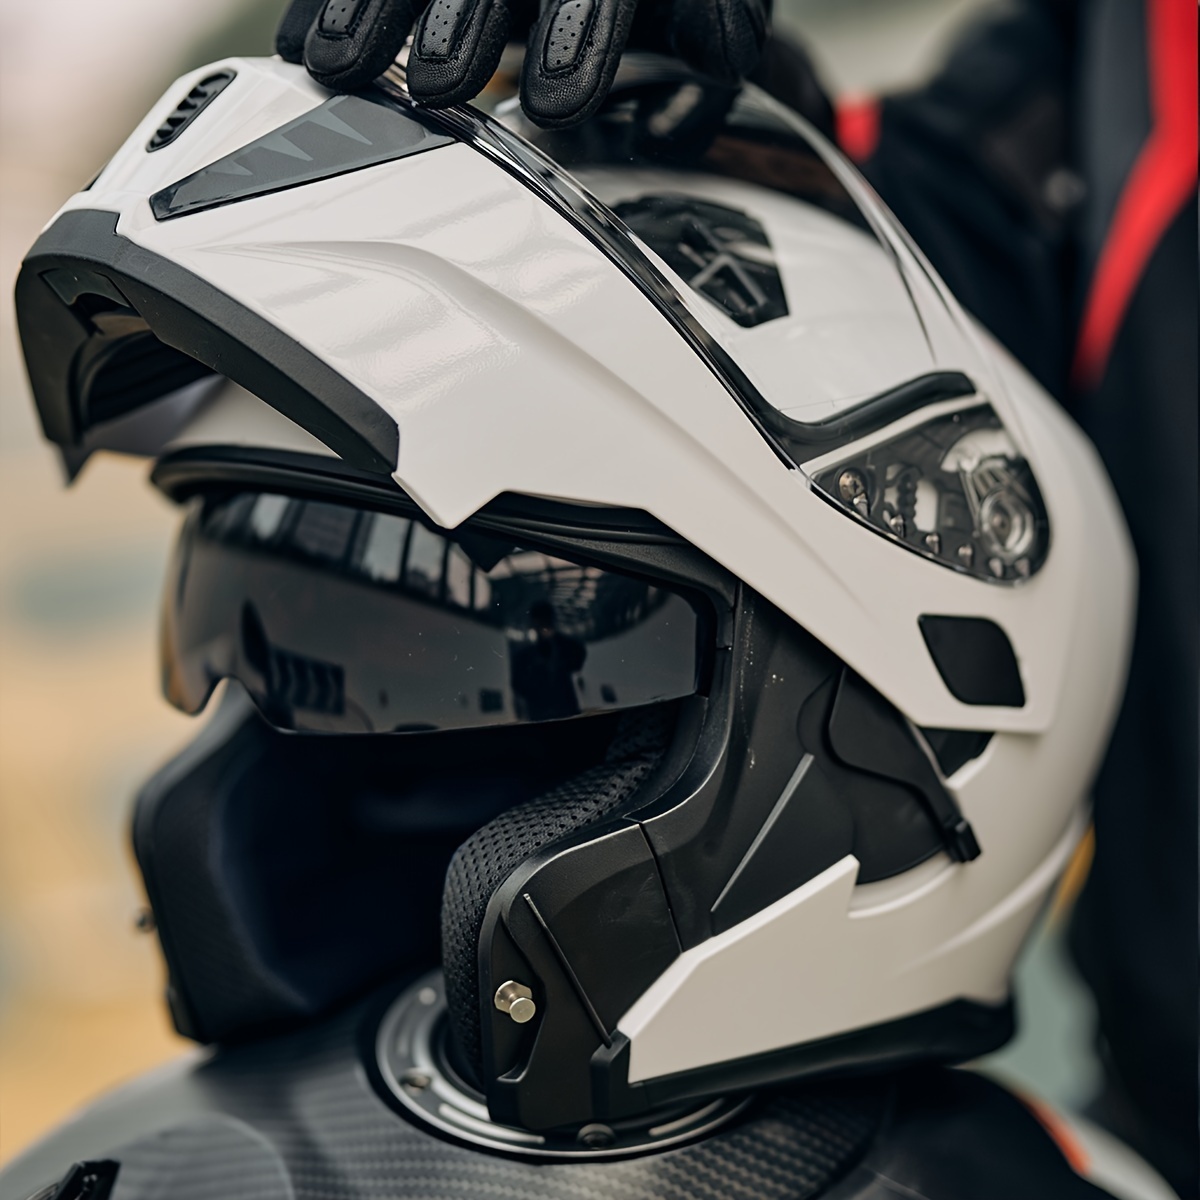  Casco deportivo de motocicleta de cara completa, cascos  integrados con Bluetooth abatibles, aprobados por el DOT, para adultos,  hombres y mujeres, casco ligero todoterreno ATV MTB : Automotriz